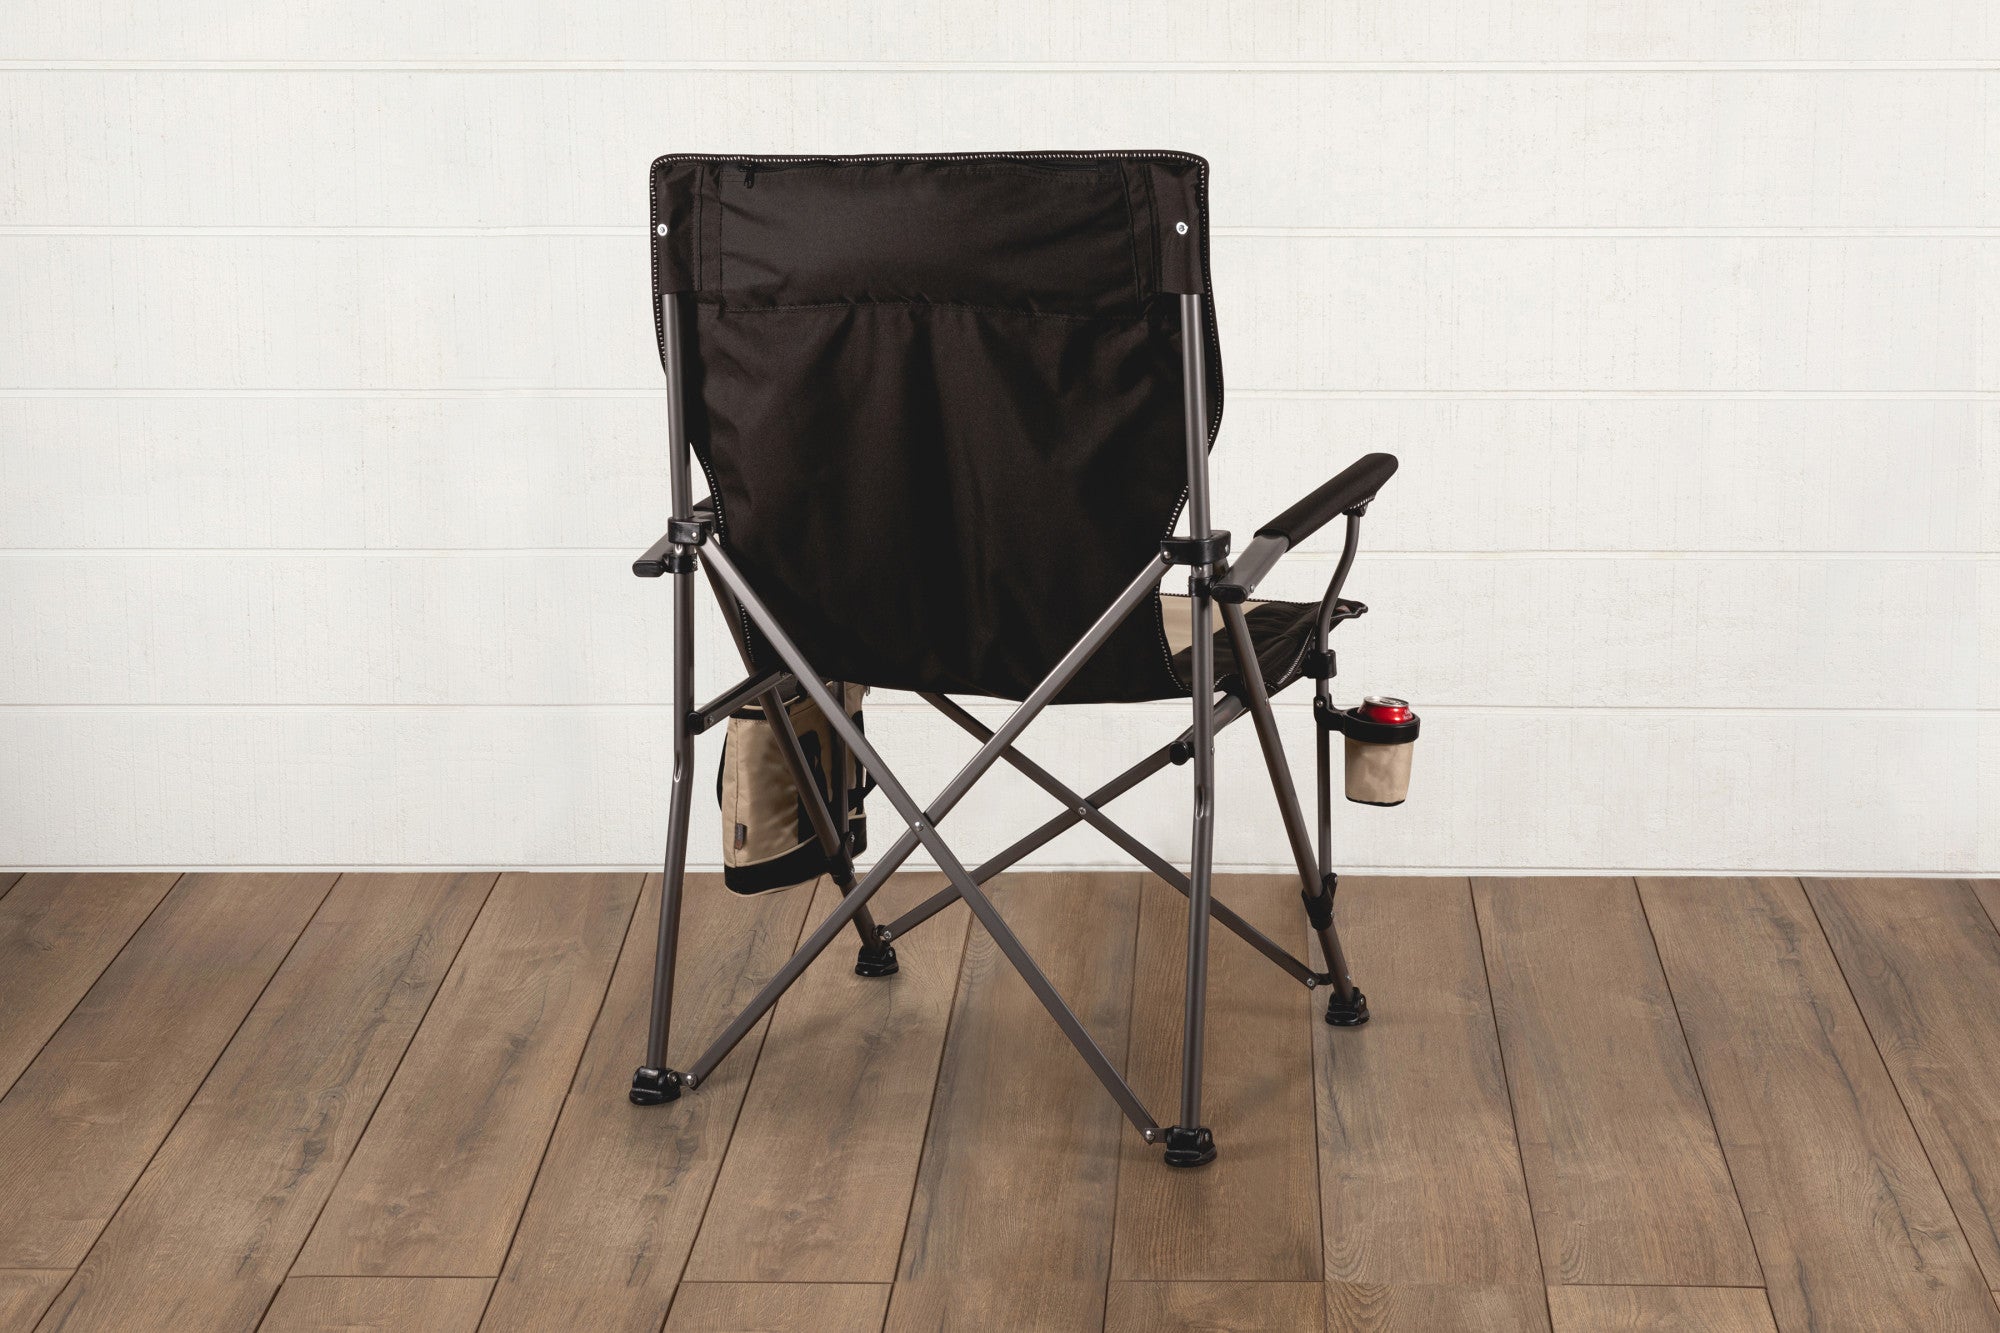 Arizona Cardinals - Big Bear XXL Camping Chair with Cooler